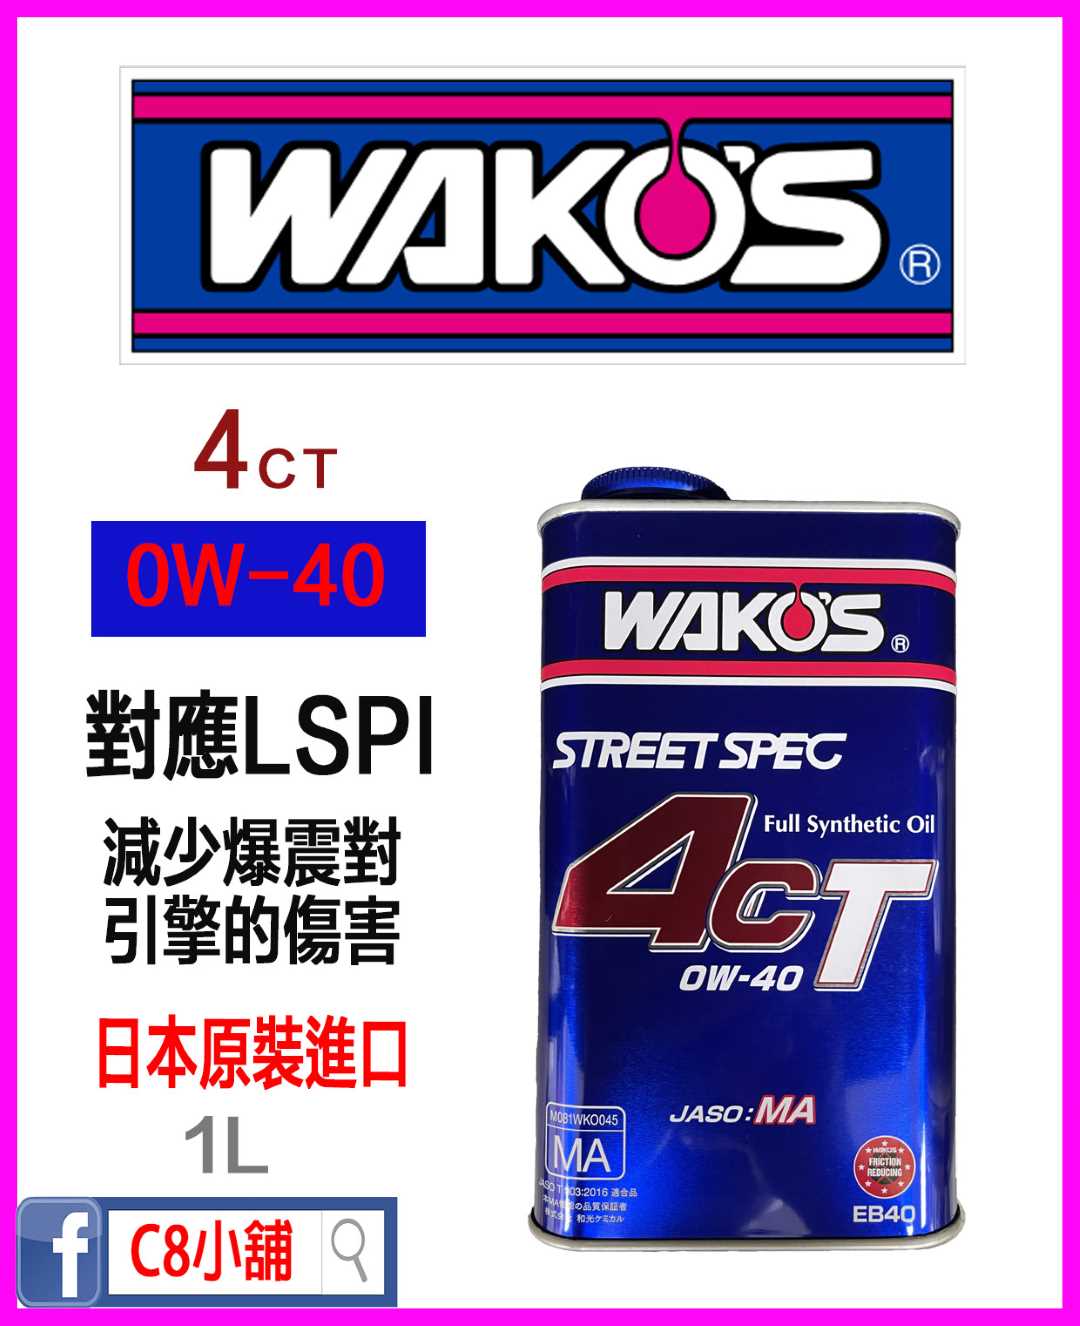 WAKO'S 日本和光4CT 0W-40 0W40 全合成機油1L